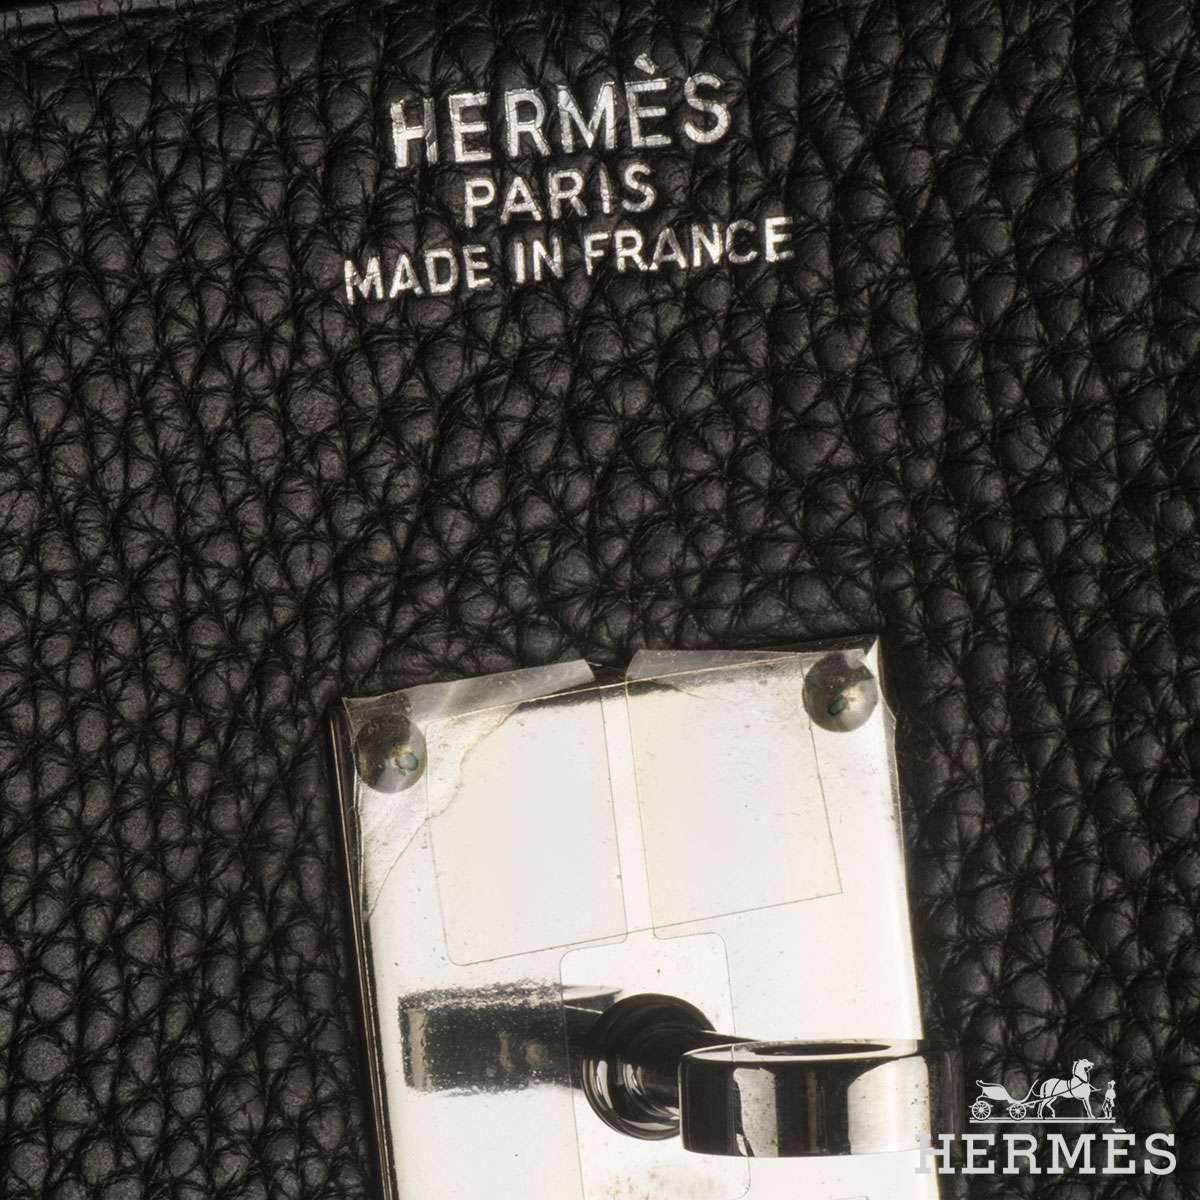 Hermès Birkin HAC 55 Brown Bag – ZAK BAGS ©️